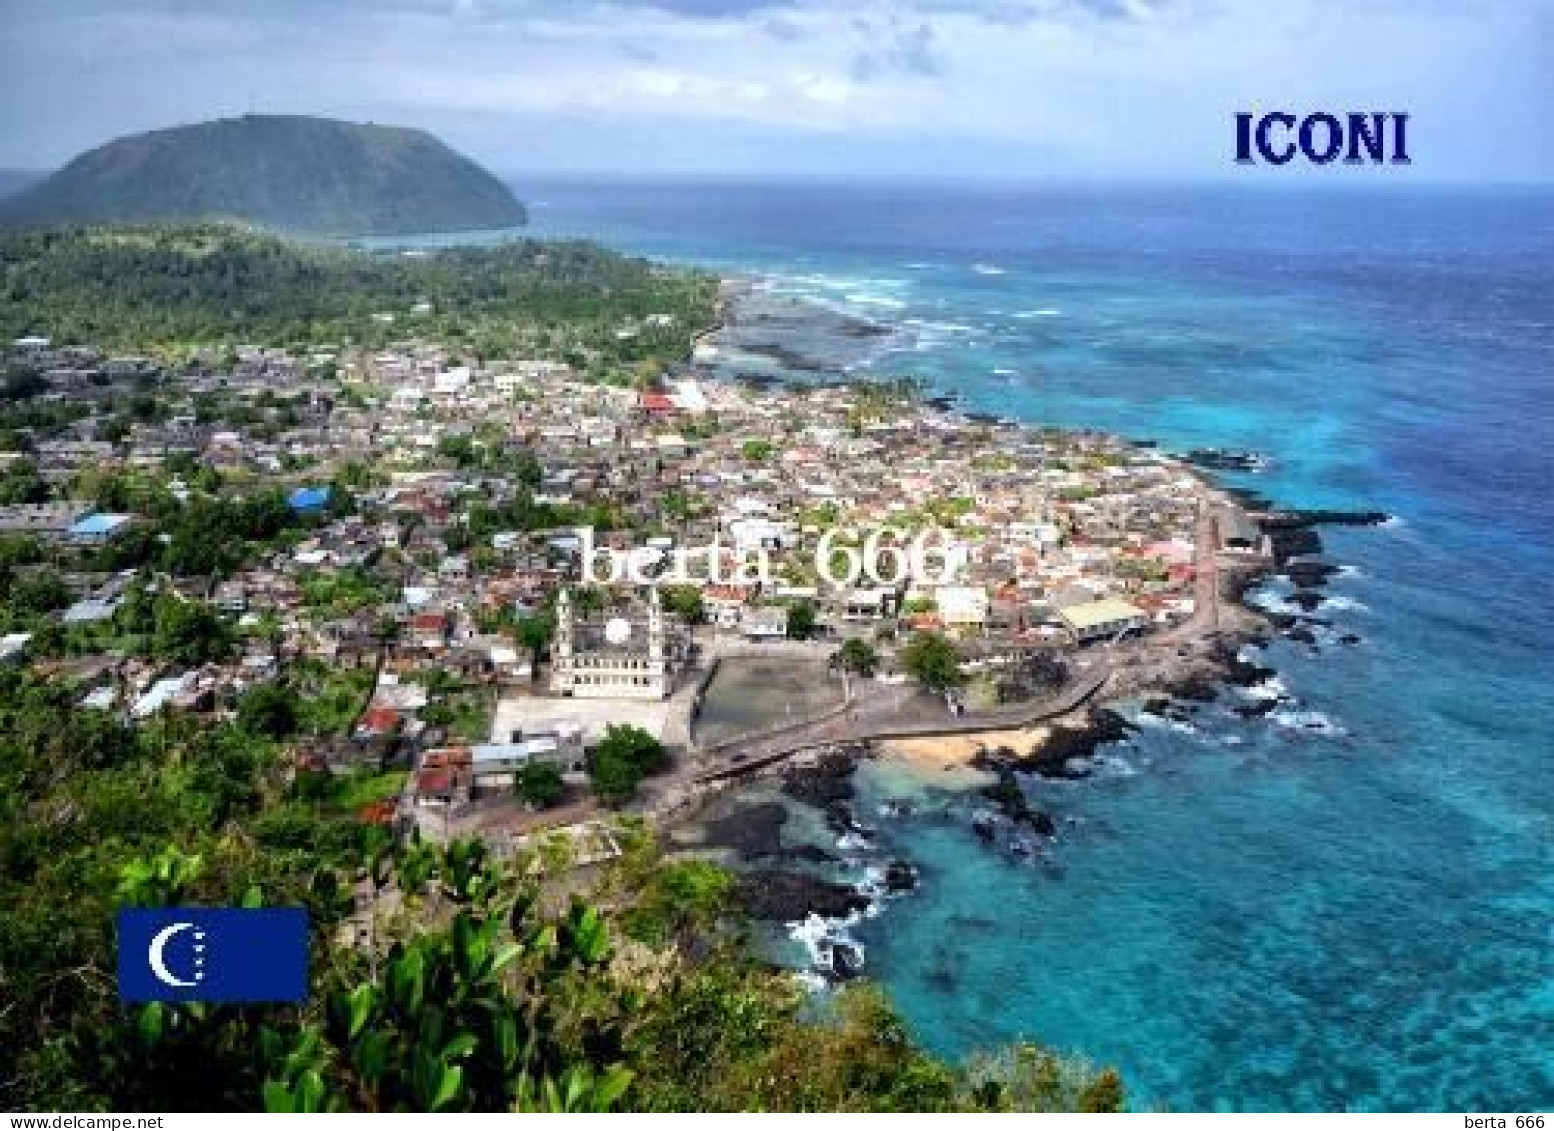 Comoros Grande Comore Iconi Aerial View Comores New Postcard - Comorre